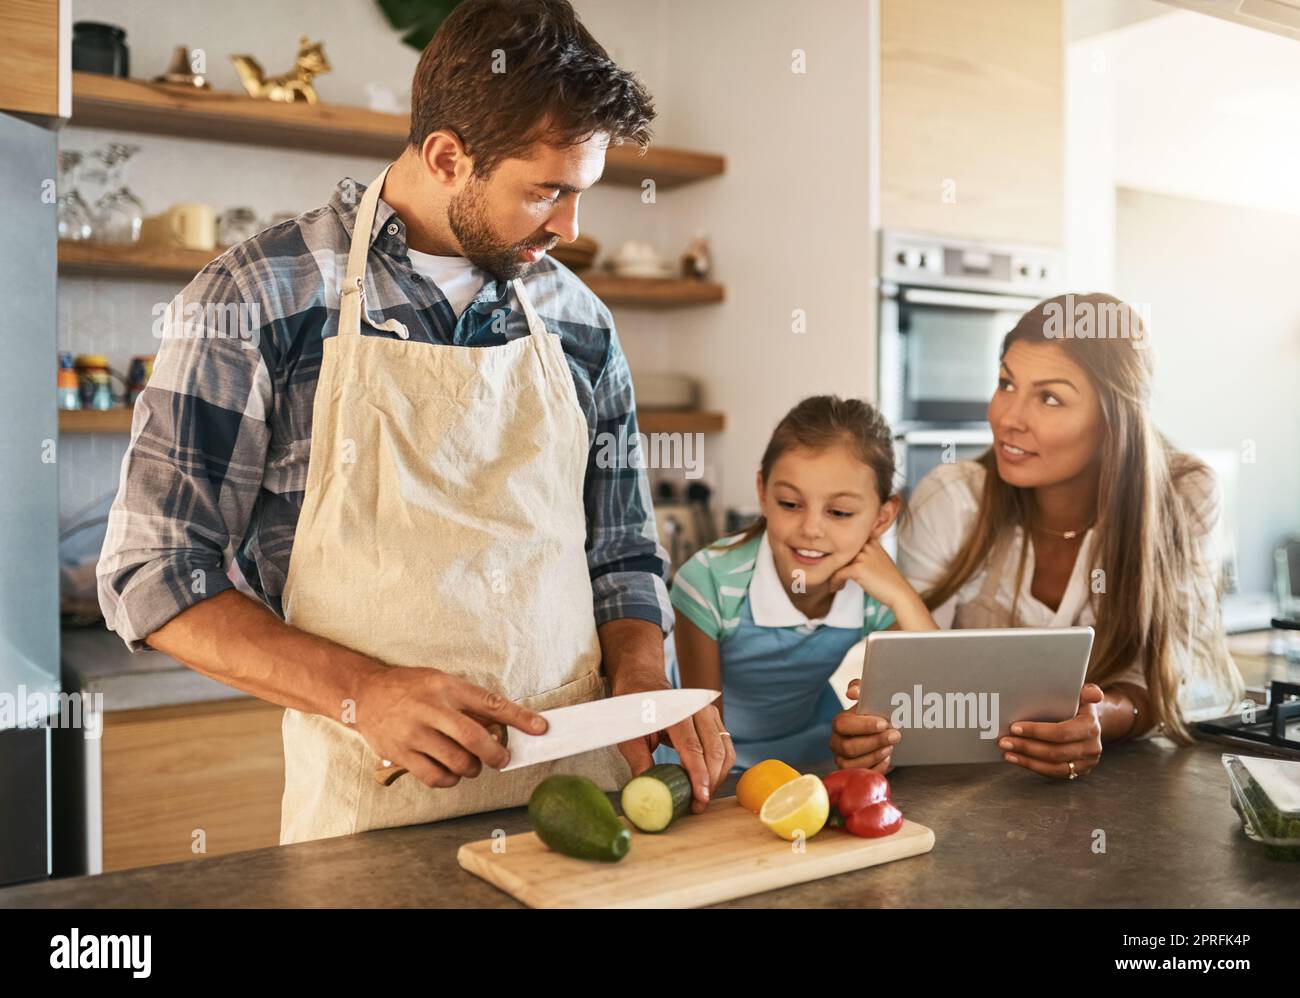 Messer sind nur für Erwachsene, okay. Zwei glückliche Eltern und ihre junge Tochter versuchen gemeinsam ein neues Rezept in der Küche. Stockfoto